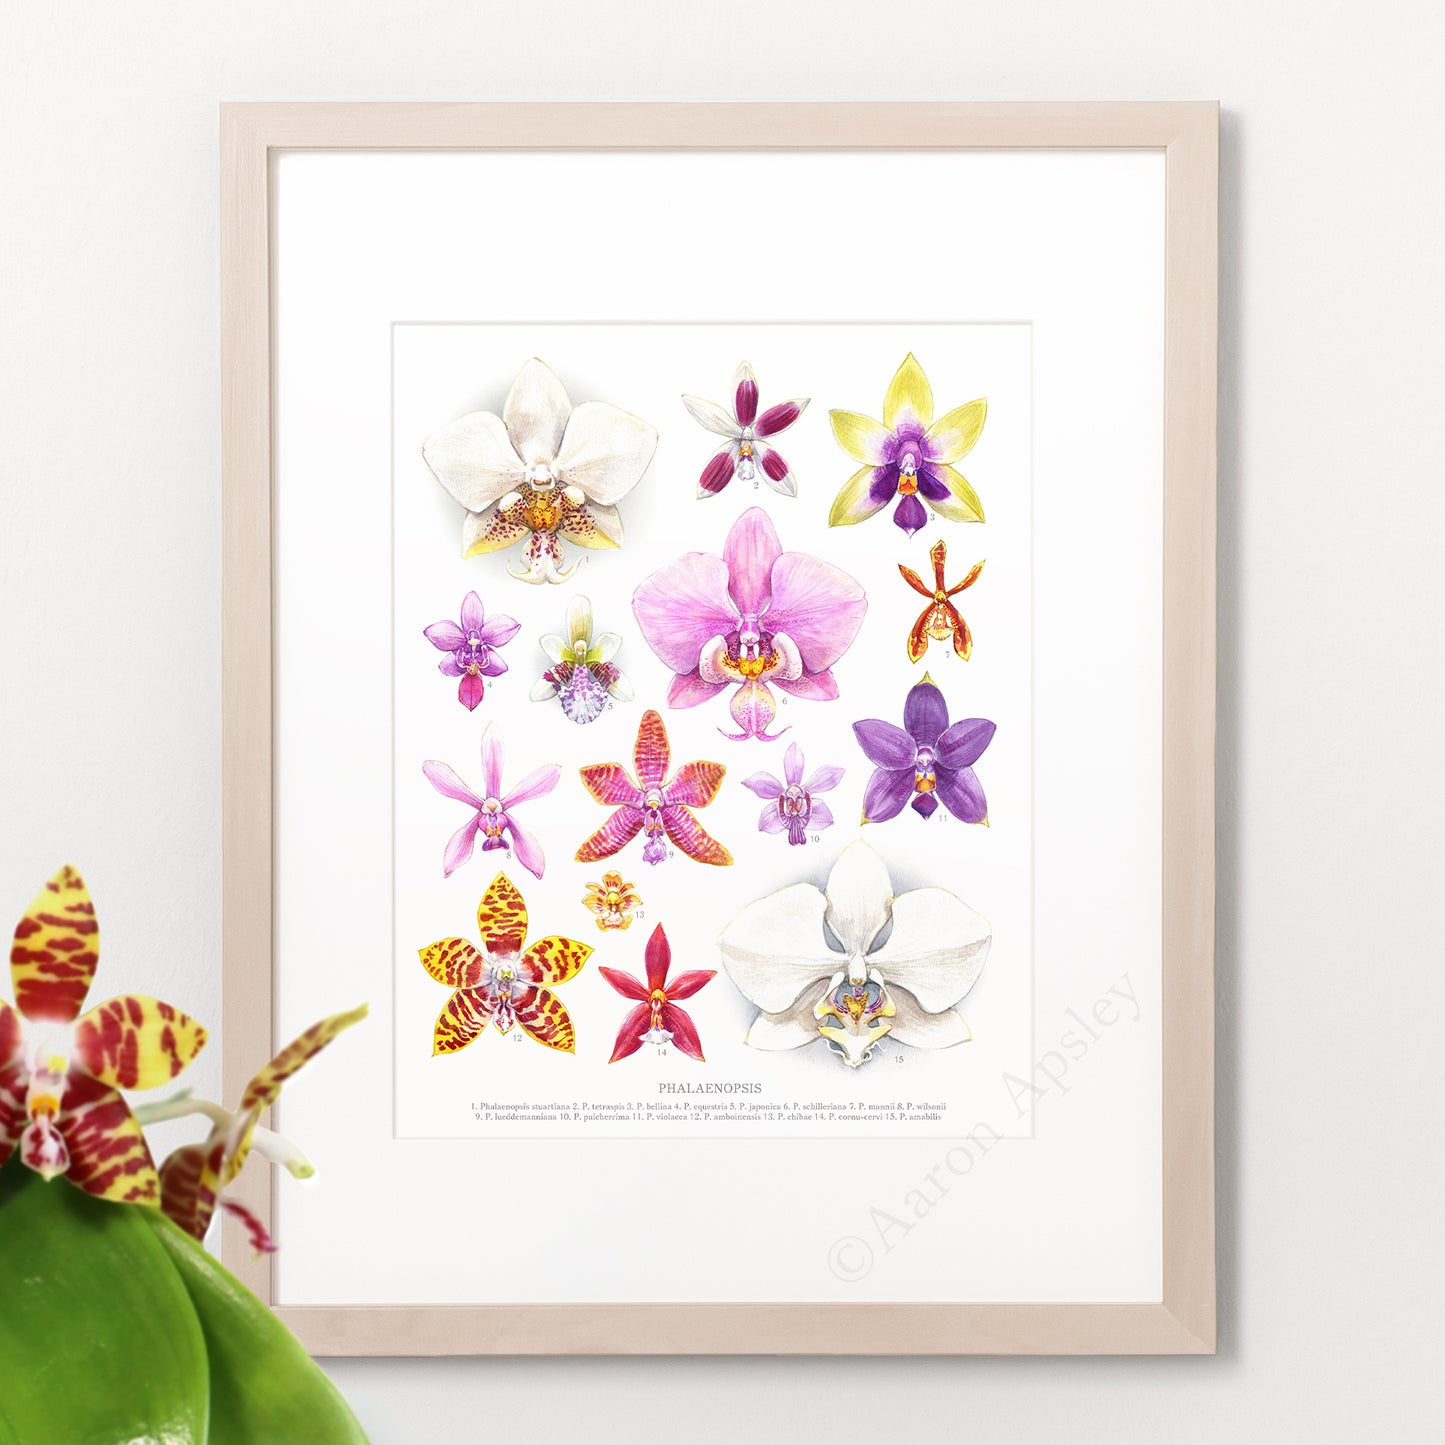 Phalaenopsis Orchid Species Print